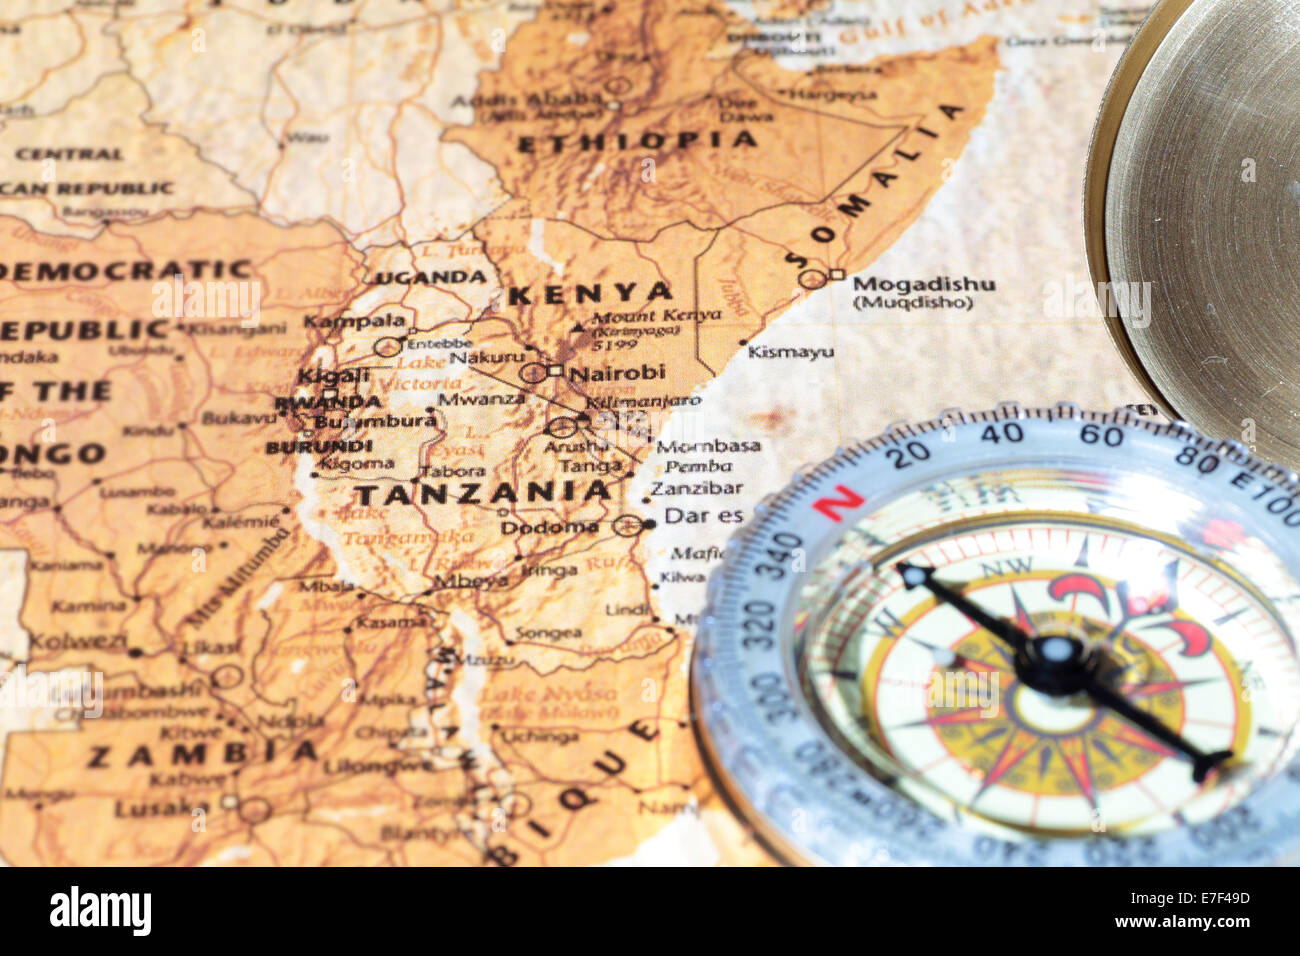 En un mapa la brújula apuntando a Tanzania y Kenia, la planificación de un destino turístico Foto de stock